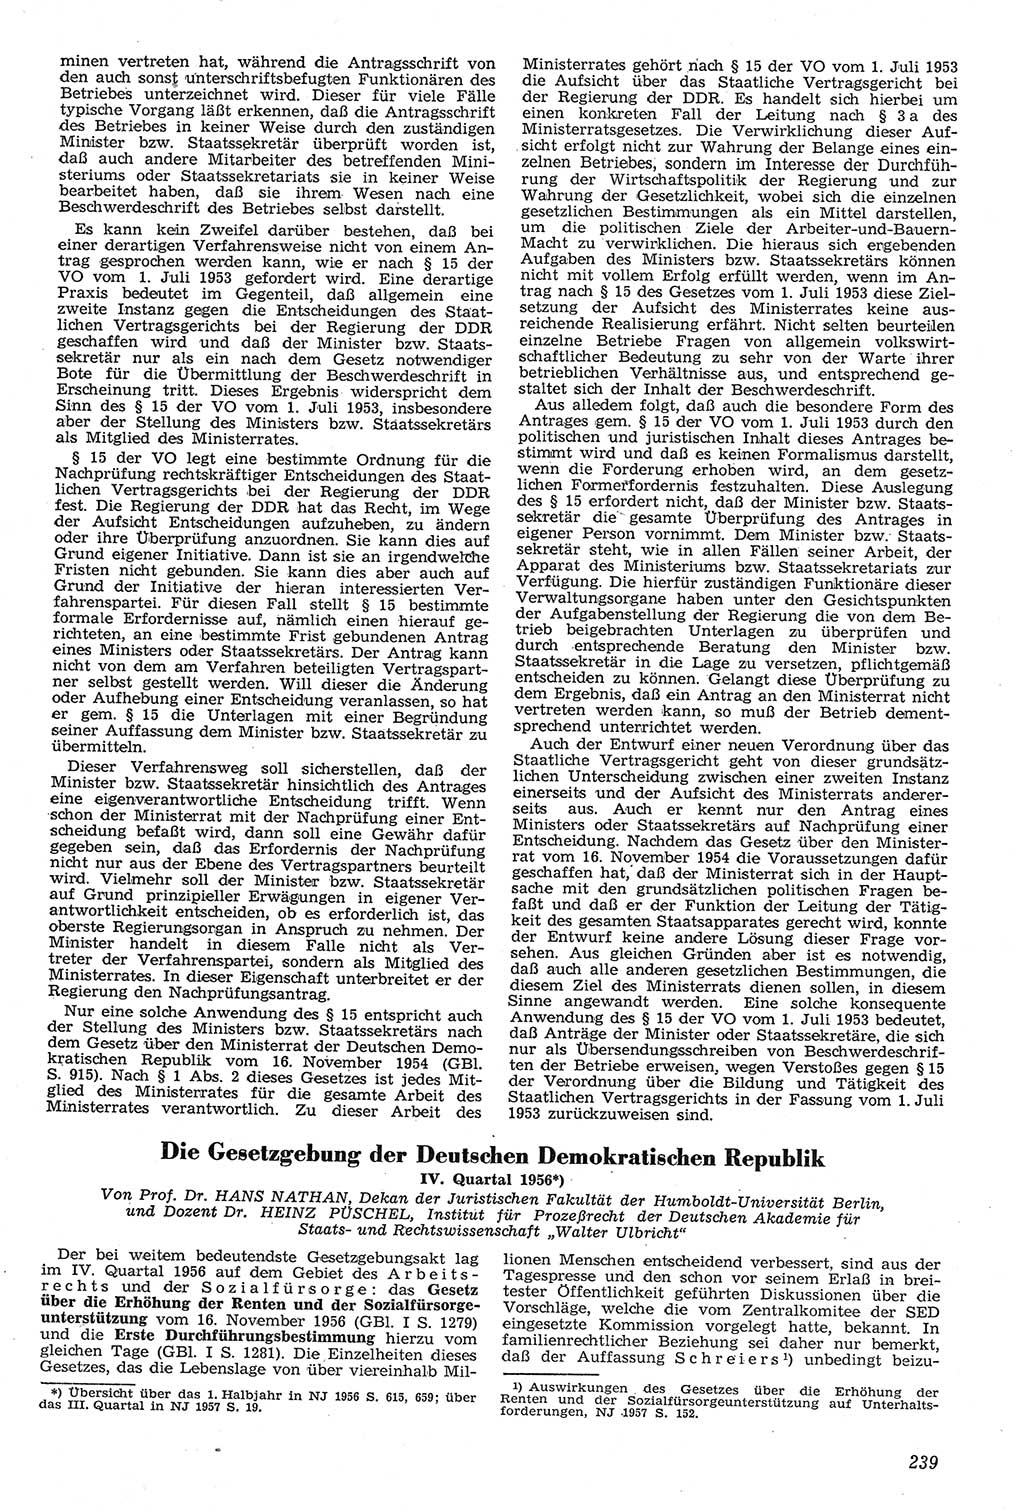 Neue Justiz (NJ), Zeitschrift für Recht und Rechtswissenschaft [Deutsche Demokratische Republik (DDR)], 11. Jahrgang 1957, Seite 239 (NJ DDR 1957, S. 239)